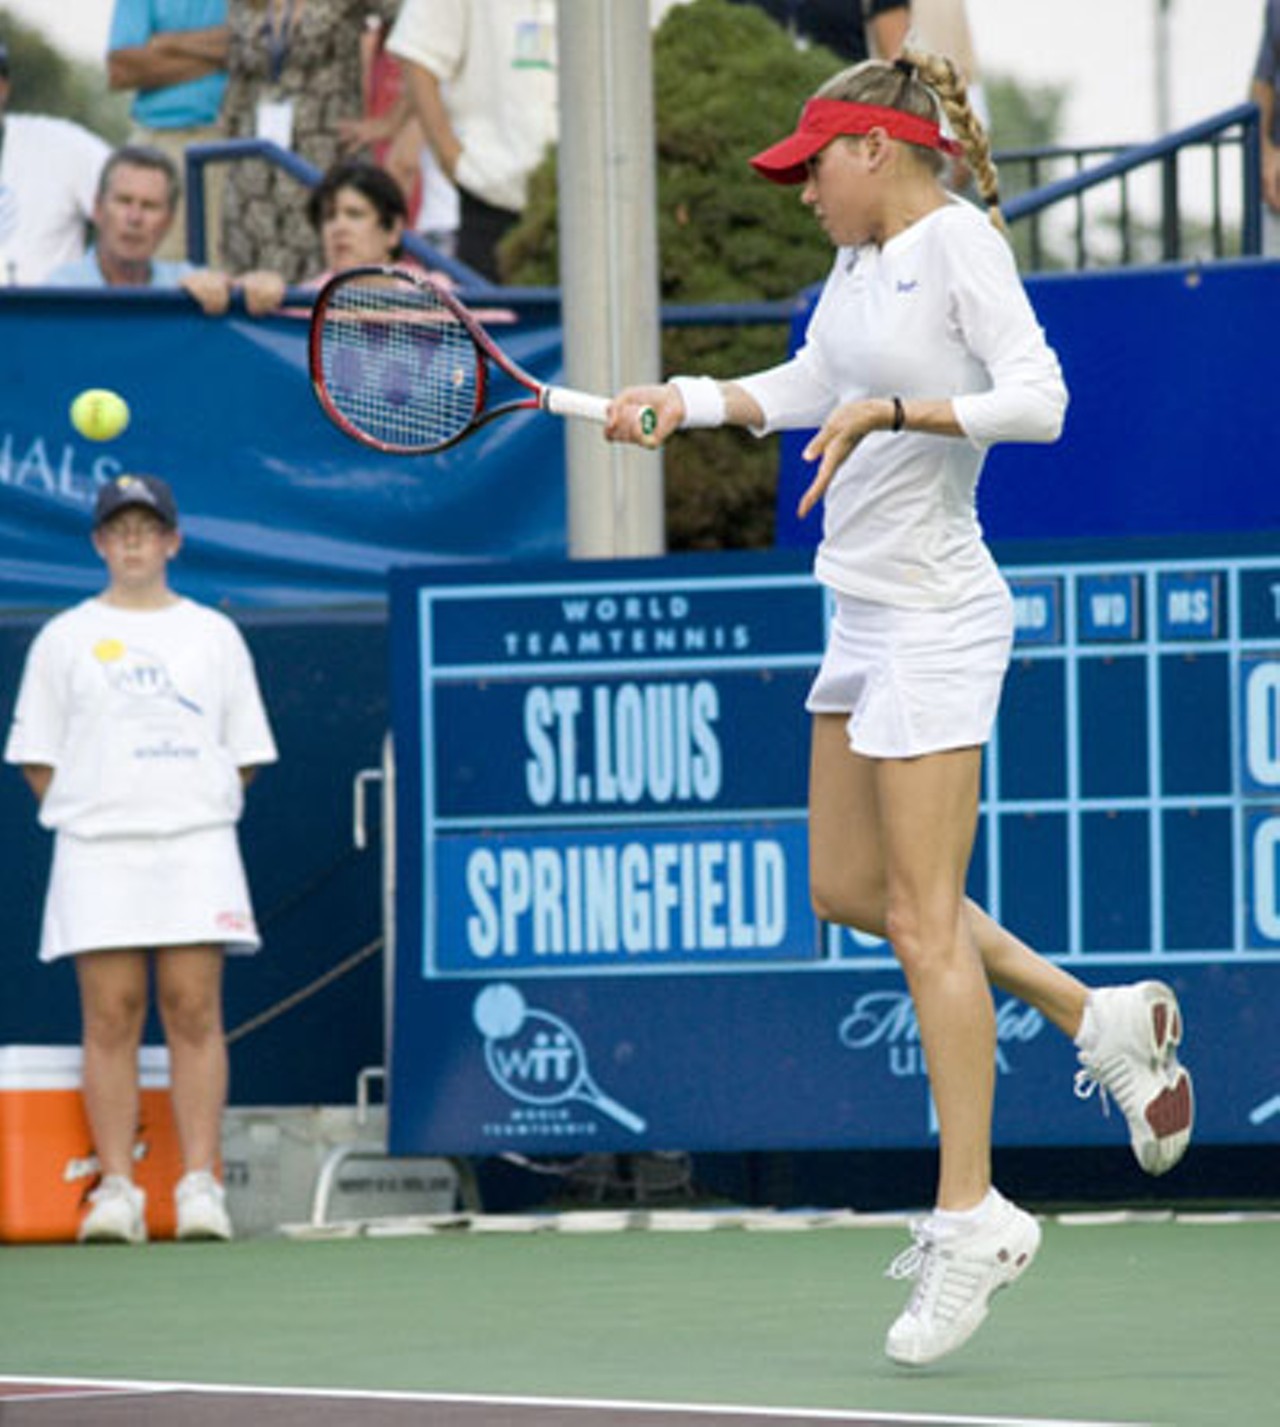 Anna Kournikova Plays Tennis in St. Louis, 7/18/08, St. Louis